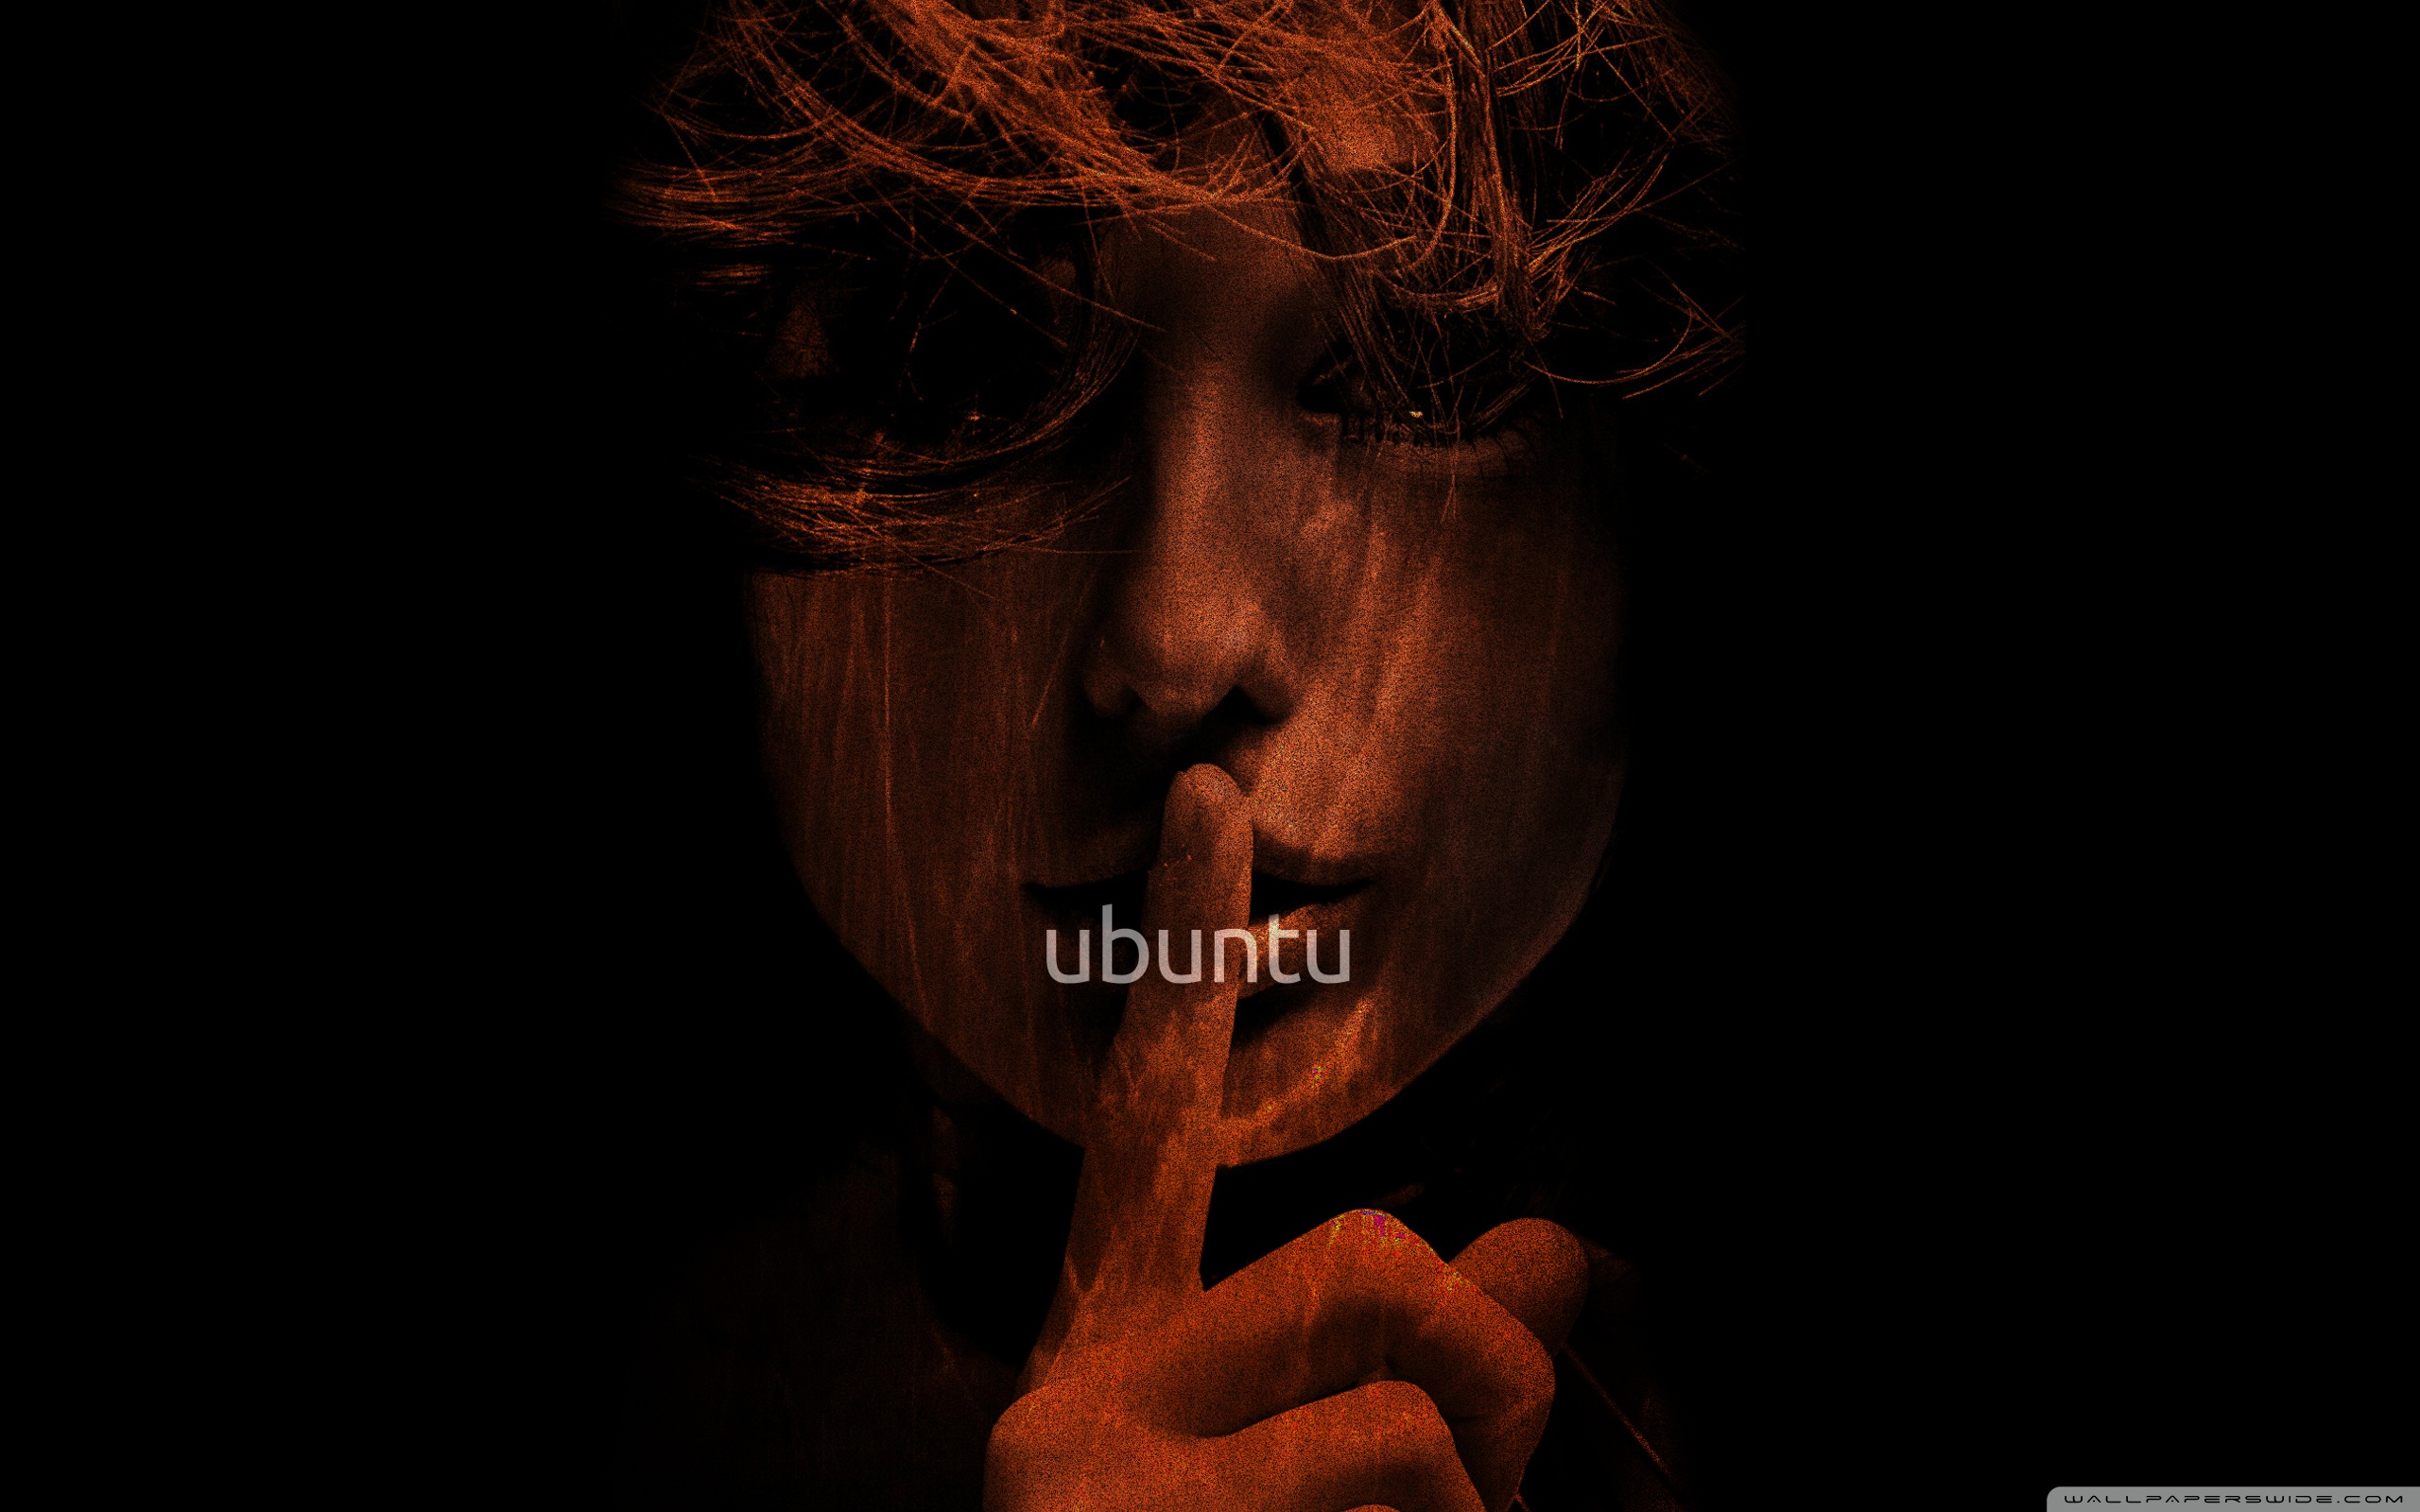 Human Ubuntu: Từng là một khái niệm mang tính triết lý, Human Ubuntu đã trở thành biểu tượng thể hiện sự đoàn kết và tôn trọng đa dạng. Hãy xem hình ảnh liên quan để hiểu rõ hơn về ý nghĩa vượt thời gian của khái niệm này.